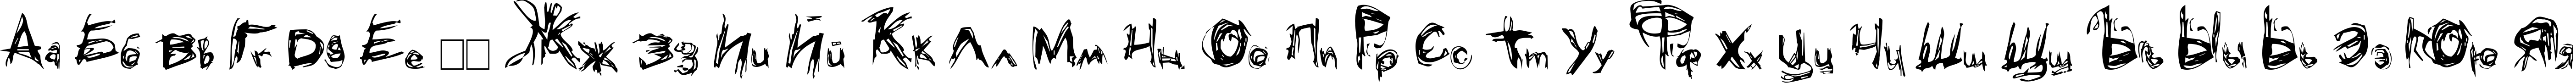 Пример написания русского алфавита шрифтом Grunge